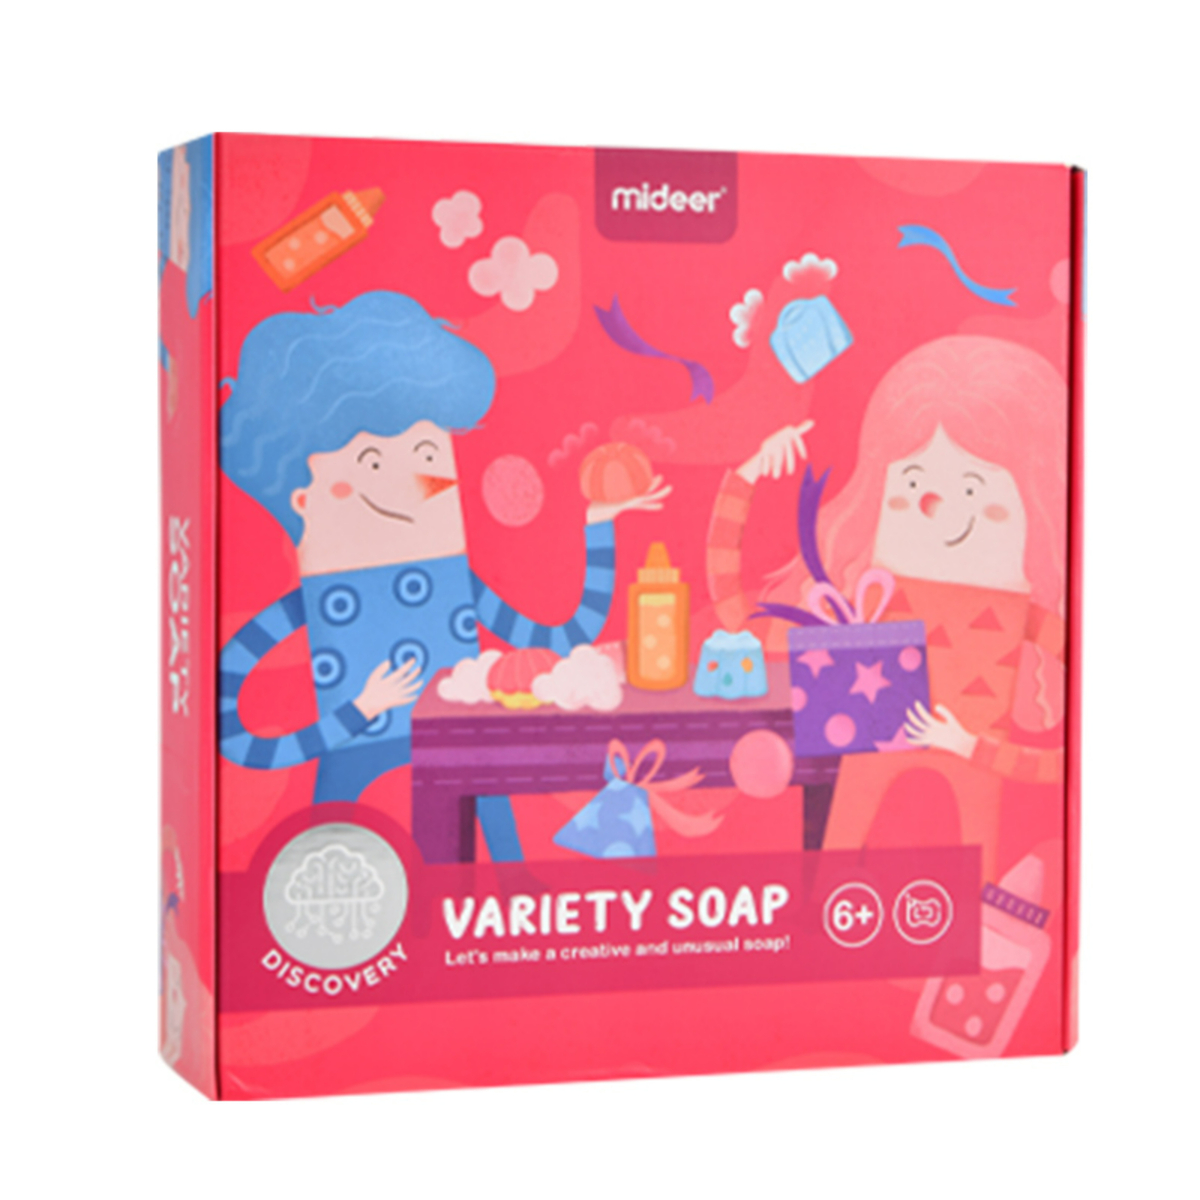 Mideer DIY Variety Soap Making Kit, MD0174